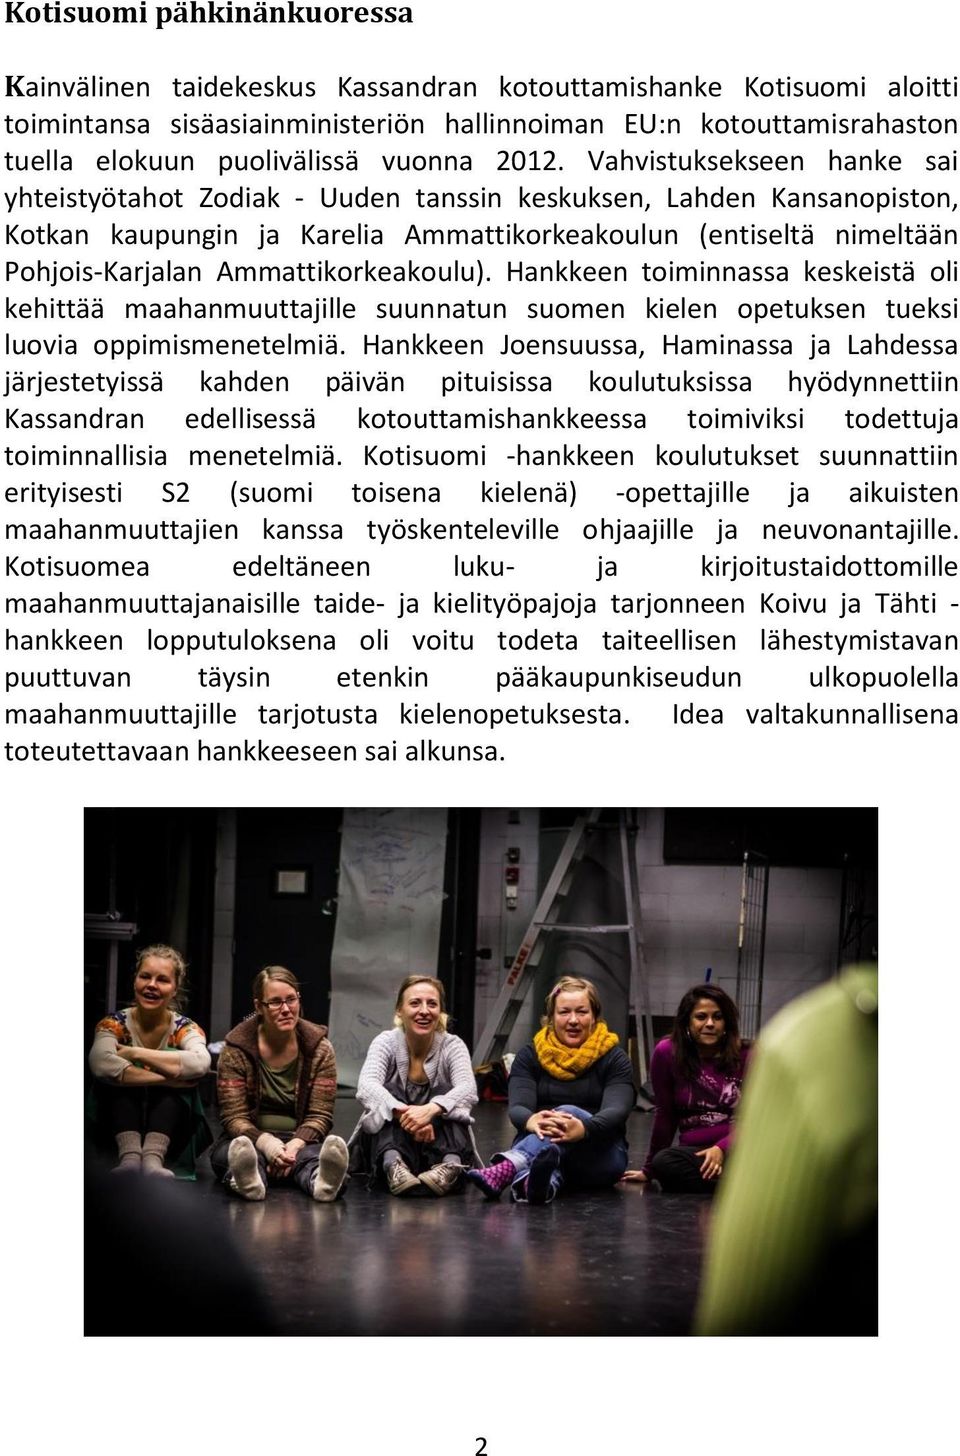 Vahvistuksekseen hanke sai yhteistyötahot Zodiak - Uuden tanssin keskuksen, Lahden Kansanopiston, Kotkan kaupungin ja Karelia Ammattikorkeakoulun (entiseltä nimeltään Pohjois-Karjalan